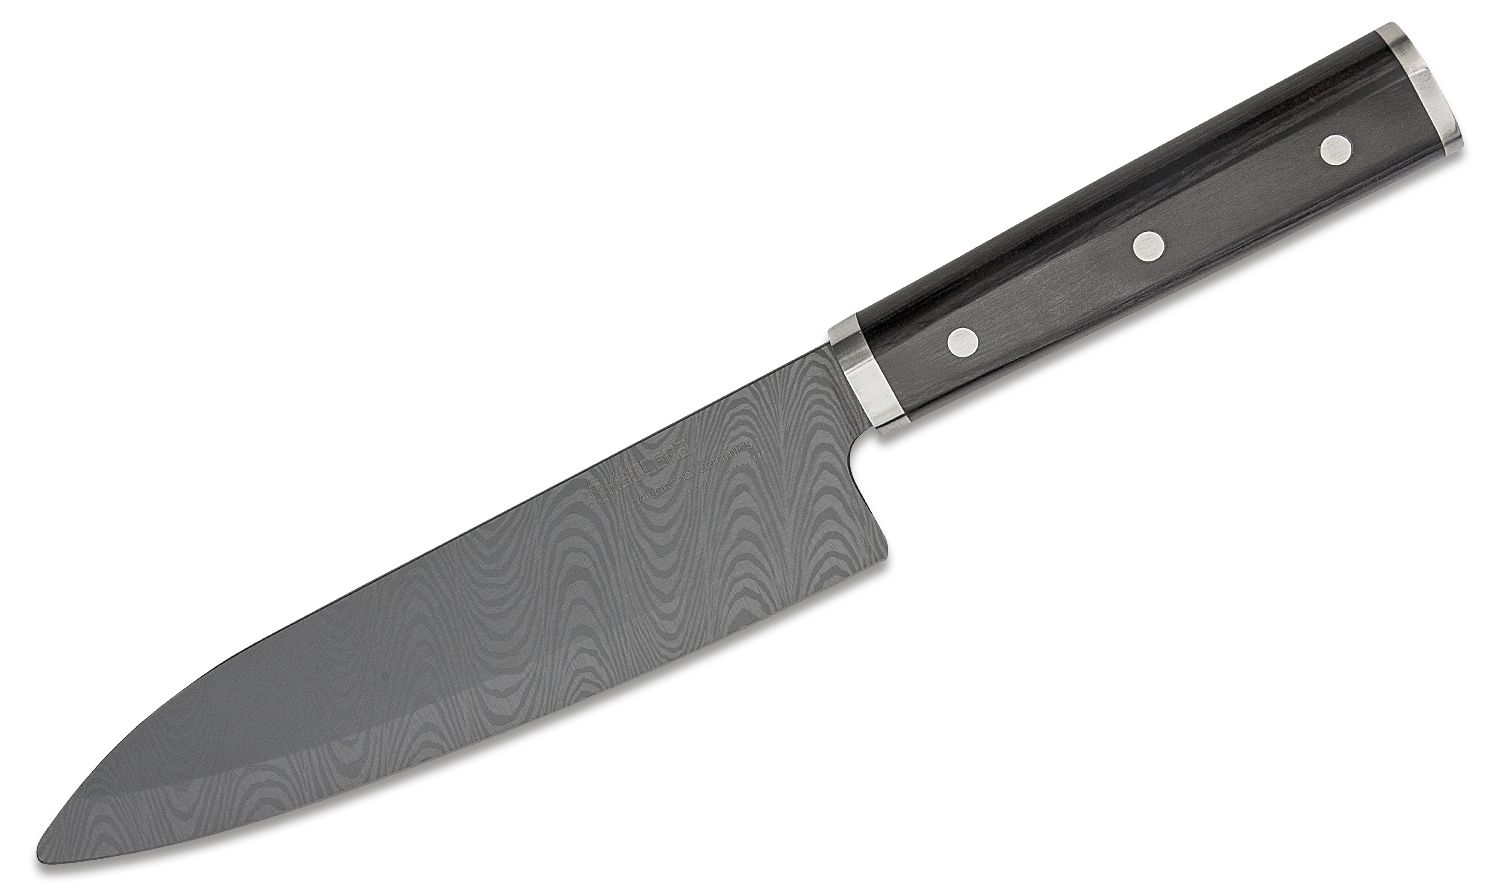 Kyocera Unveils Bio Series Ceramic Knives for Eco-Conscious Cooks